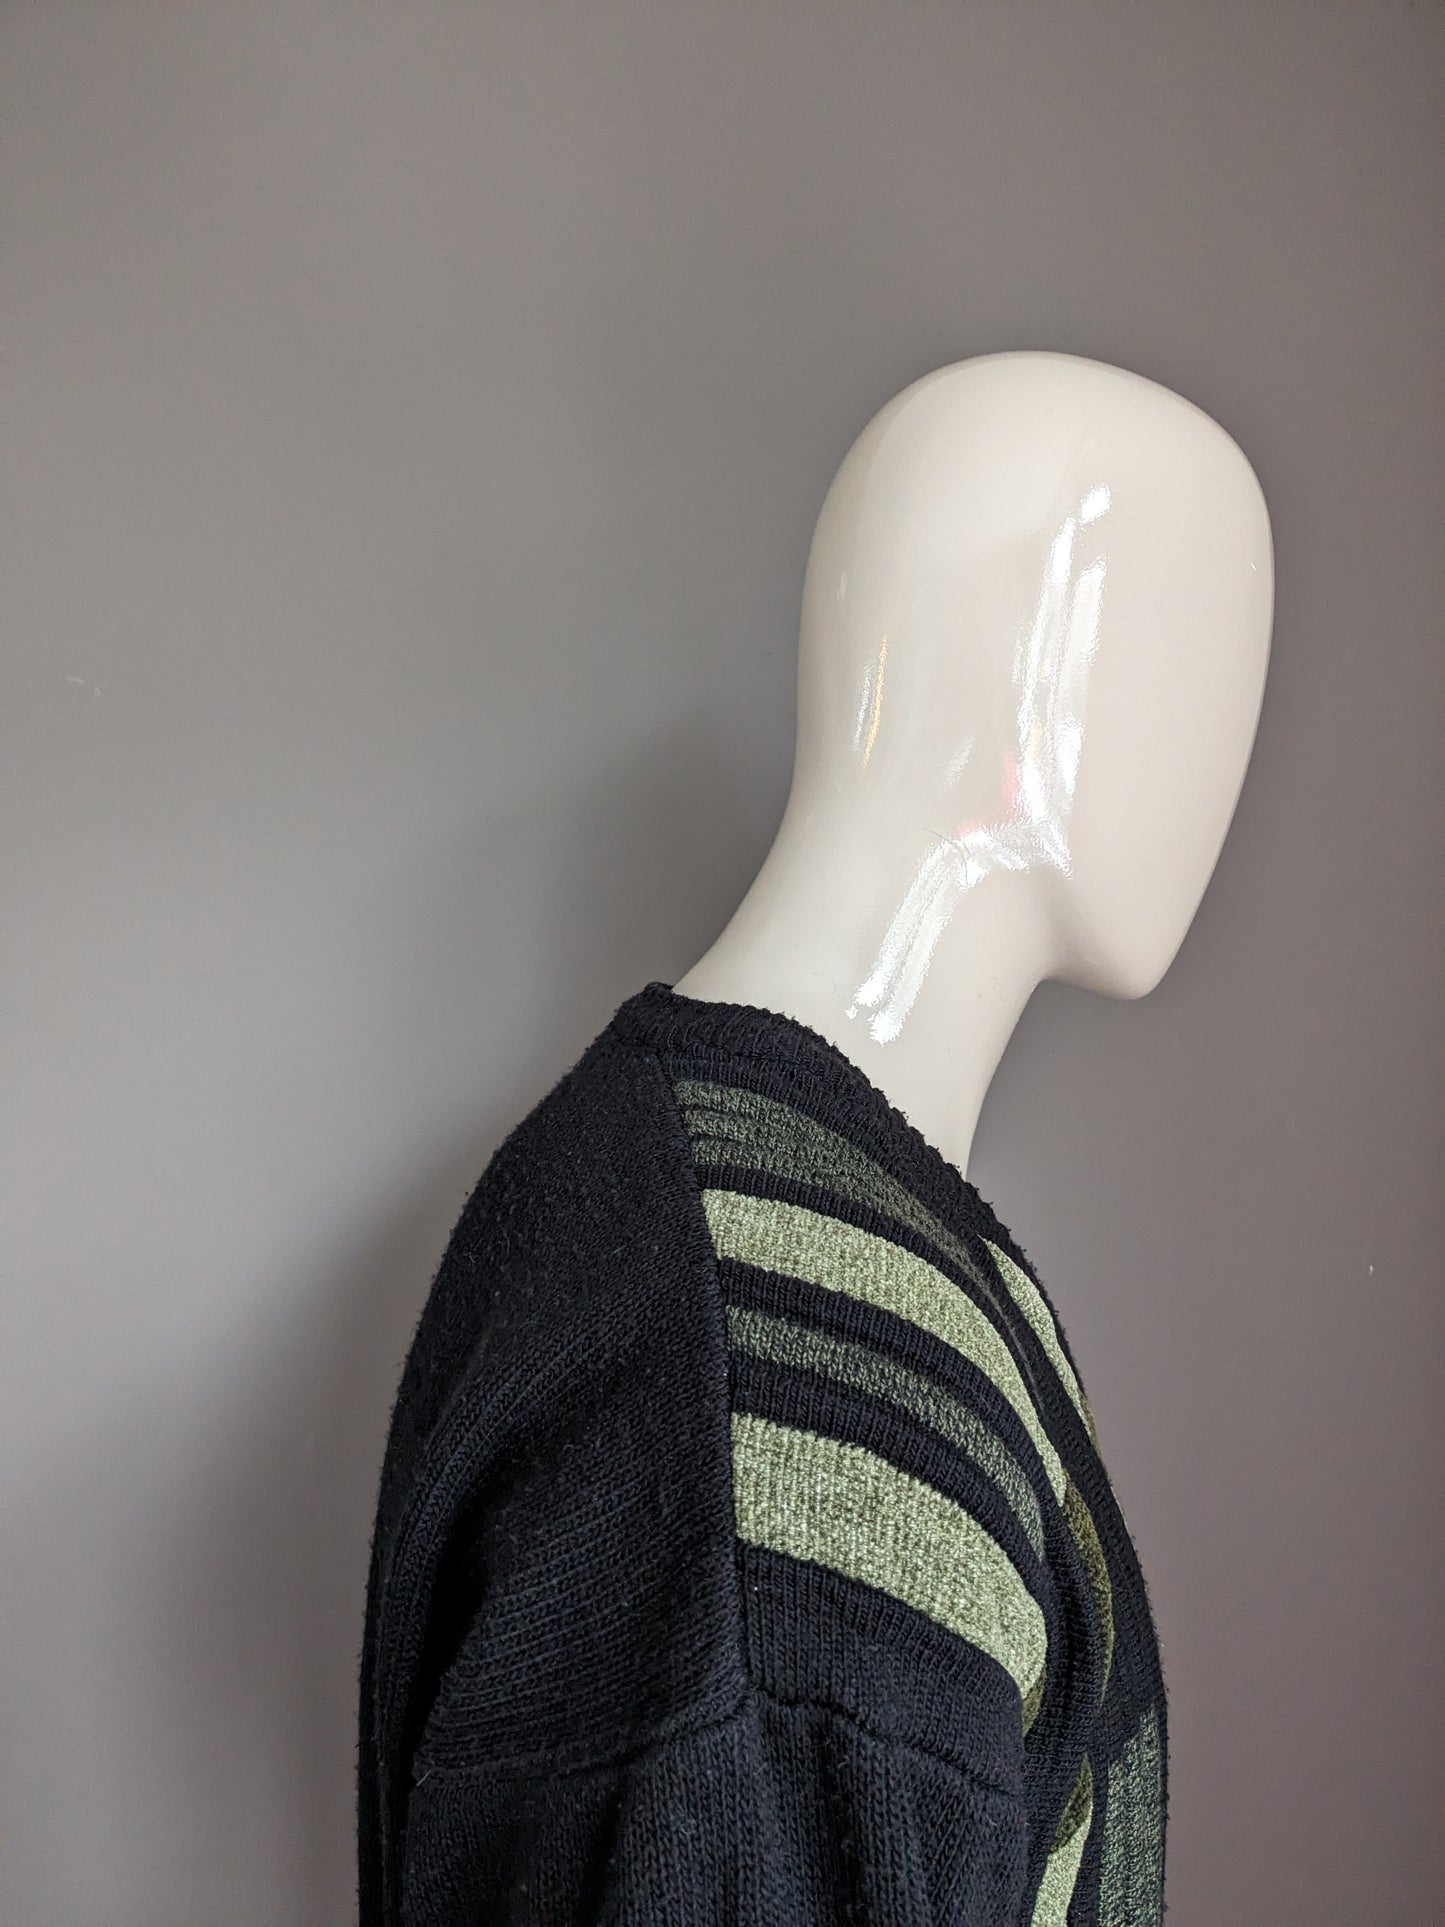 Maglione di lana vintage con scollo a V. Black Green Coloted. Taglia L.